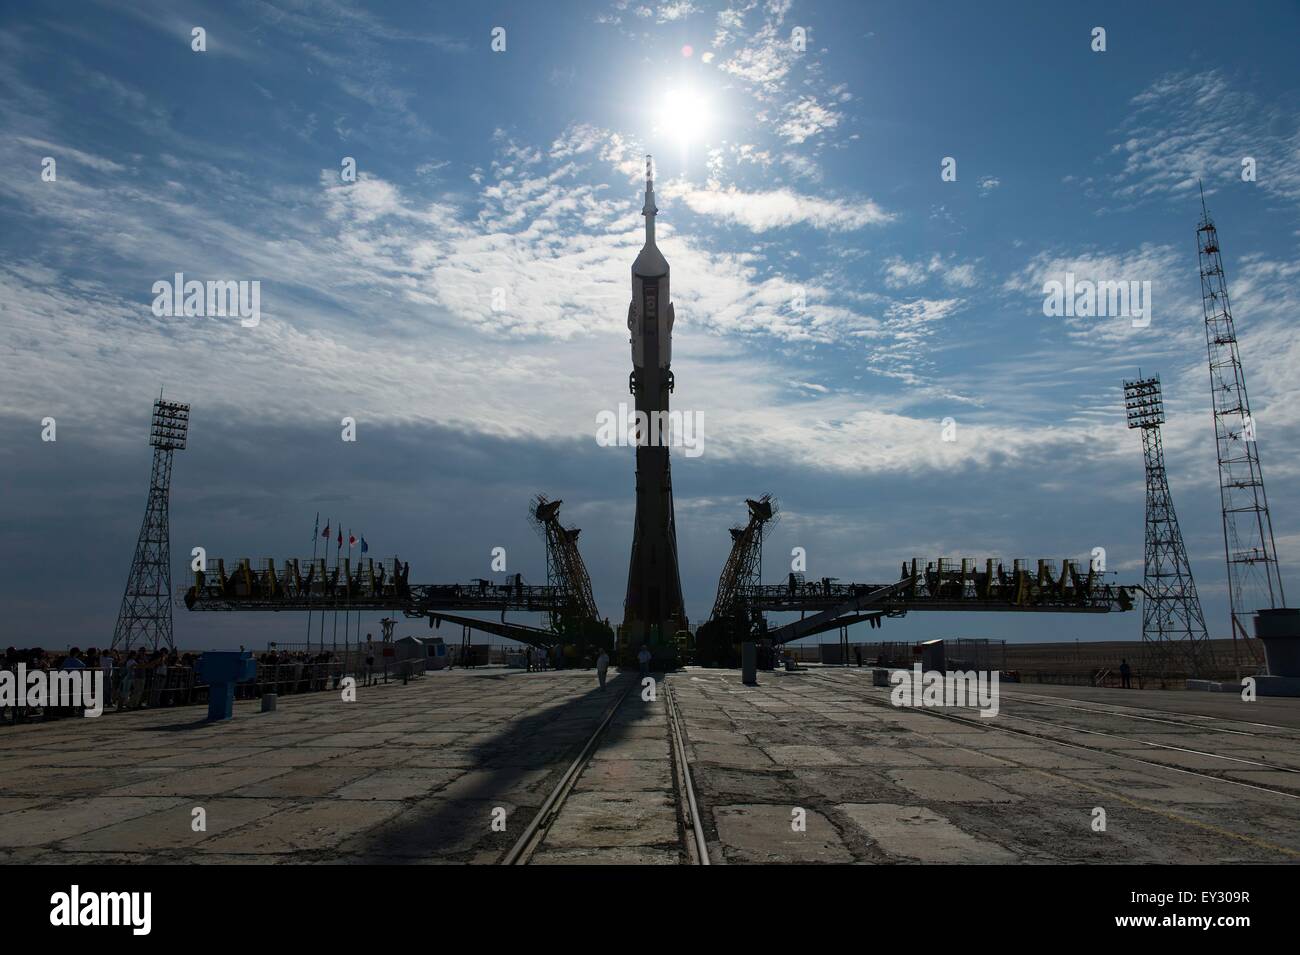 Cosmodromo di Baikonur in Kazakhstan. Il 20 luglio, 2015. Il Soyuz TMA-17M veicolo spaziale è sollevato in posizione sulla rampa di lancio presso il cosmodromo di Baikonur Luglio 20, 2015 in Kazakistan. Lancio del razzo Soyuz è prevista per il mese di luglio 23 e porterà Expedition 44 equipaggio alla Stazione spaziale internazionale. Foto Stock